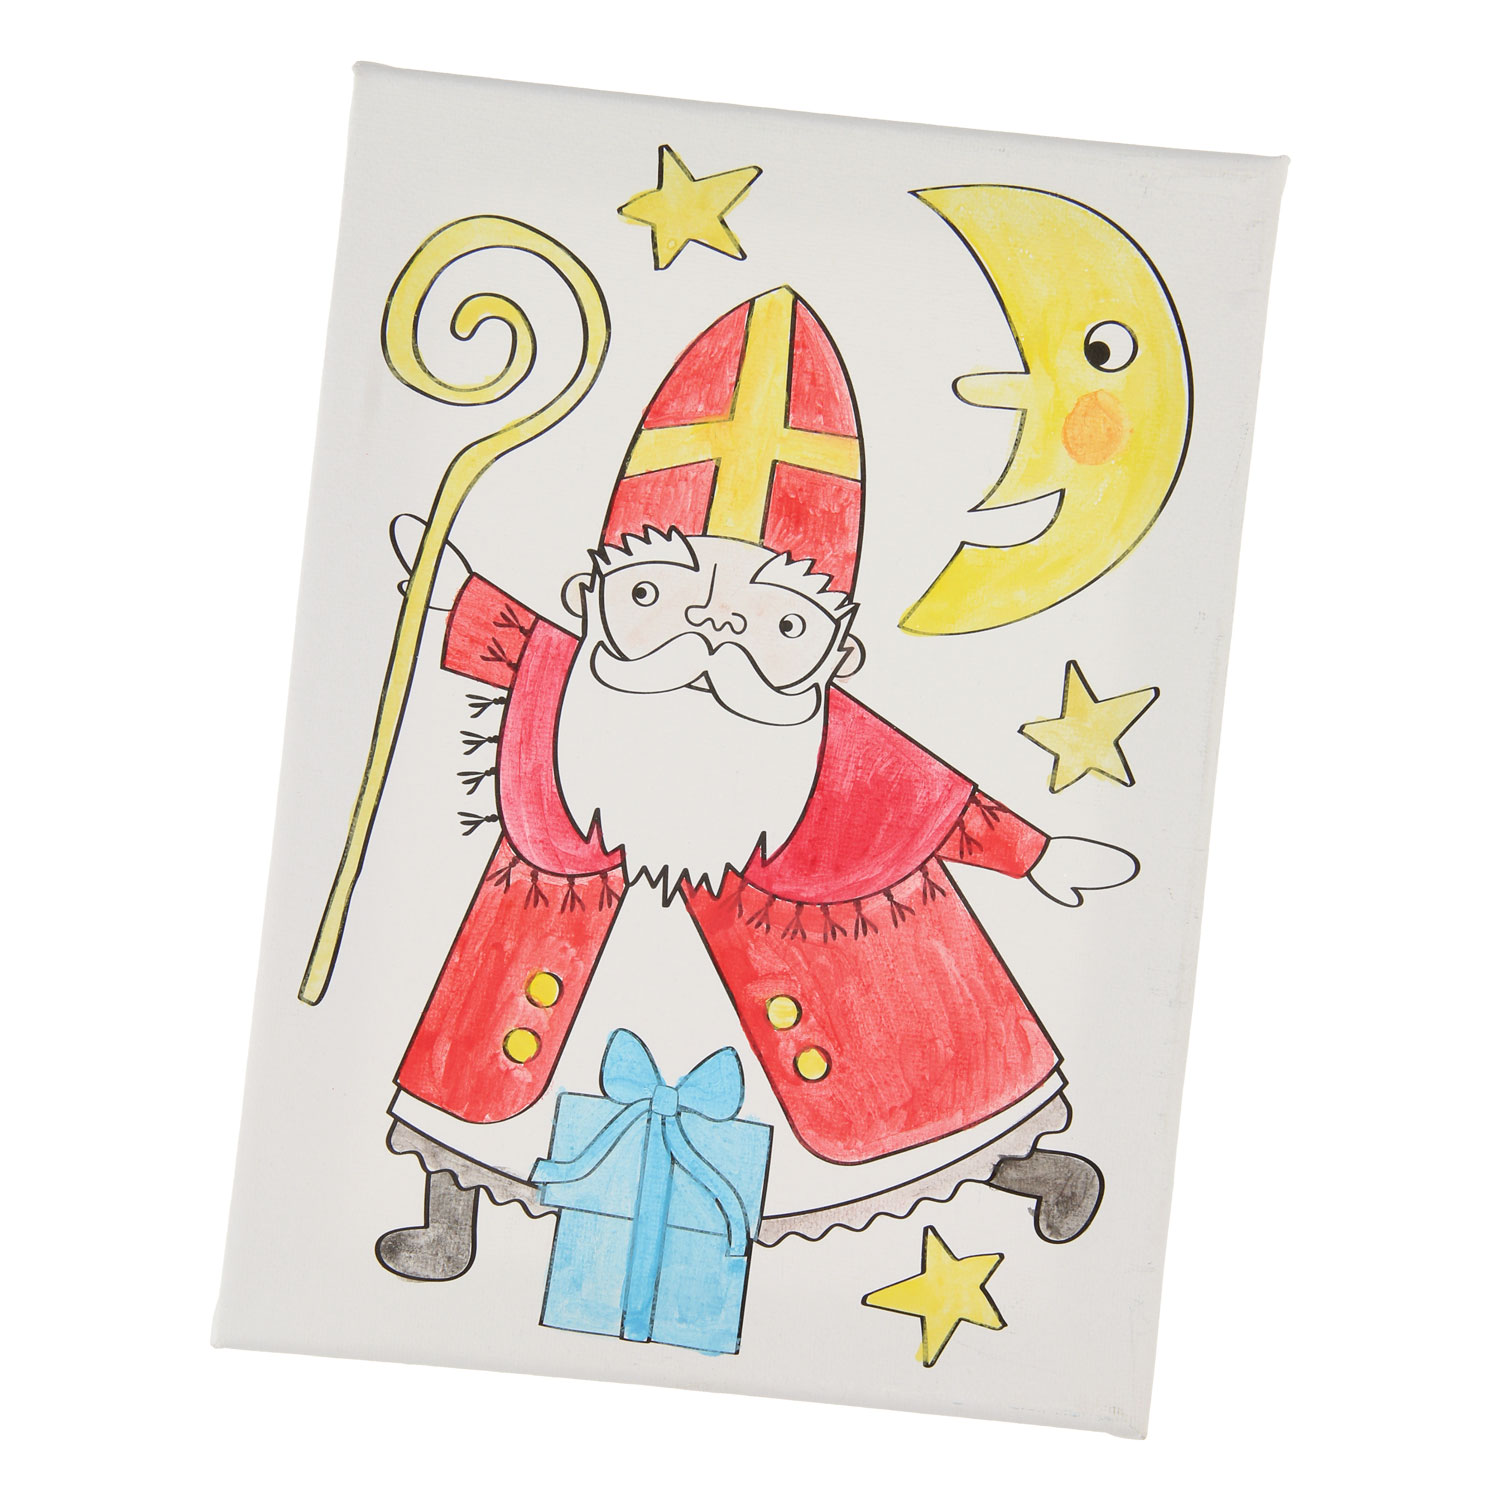 Leinwanddruck Sinterklaas